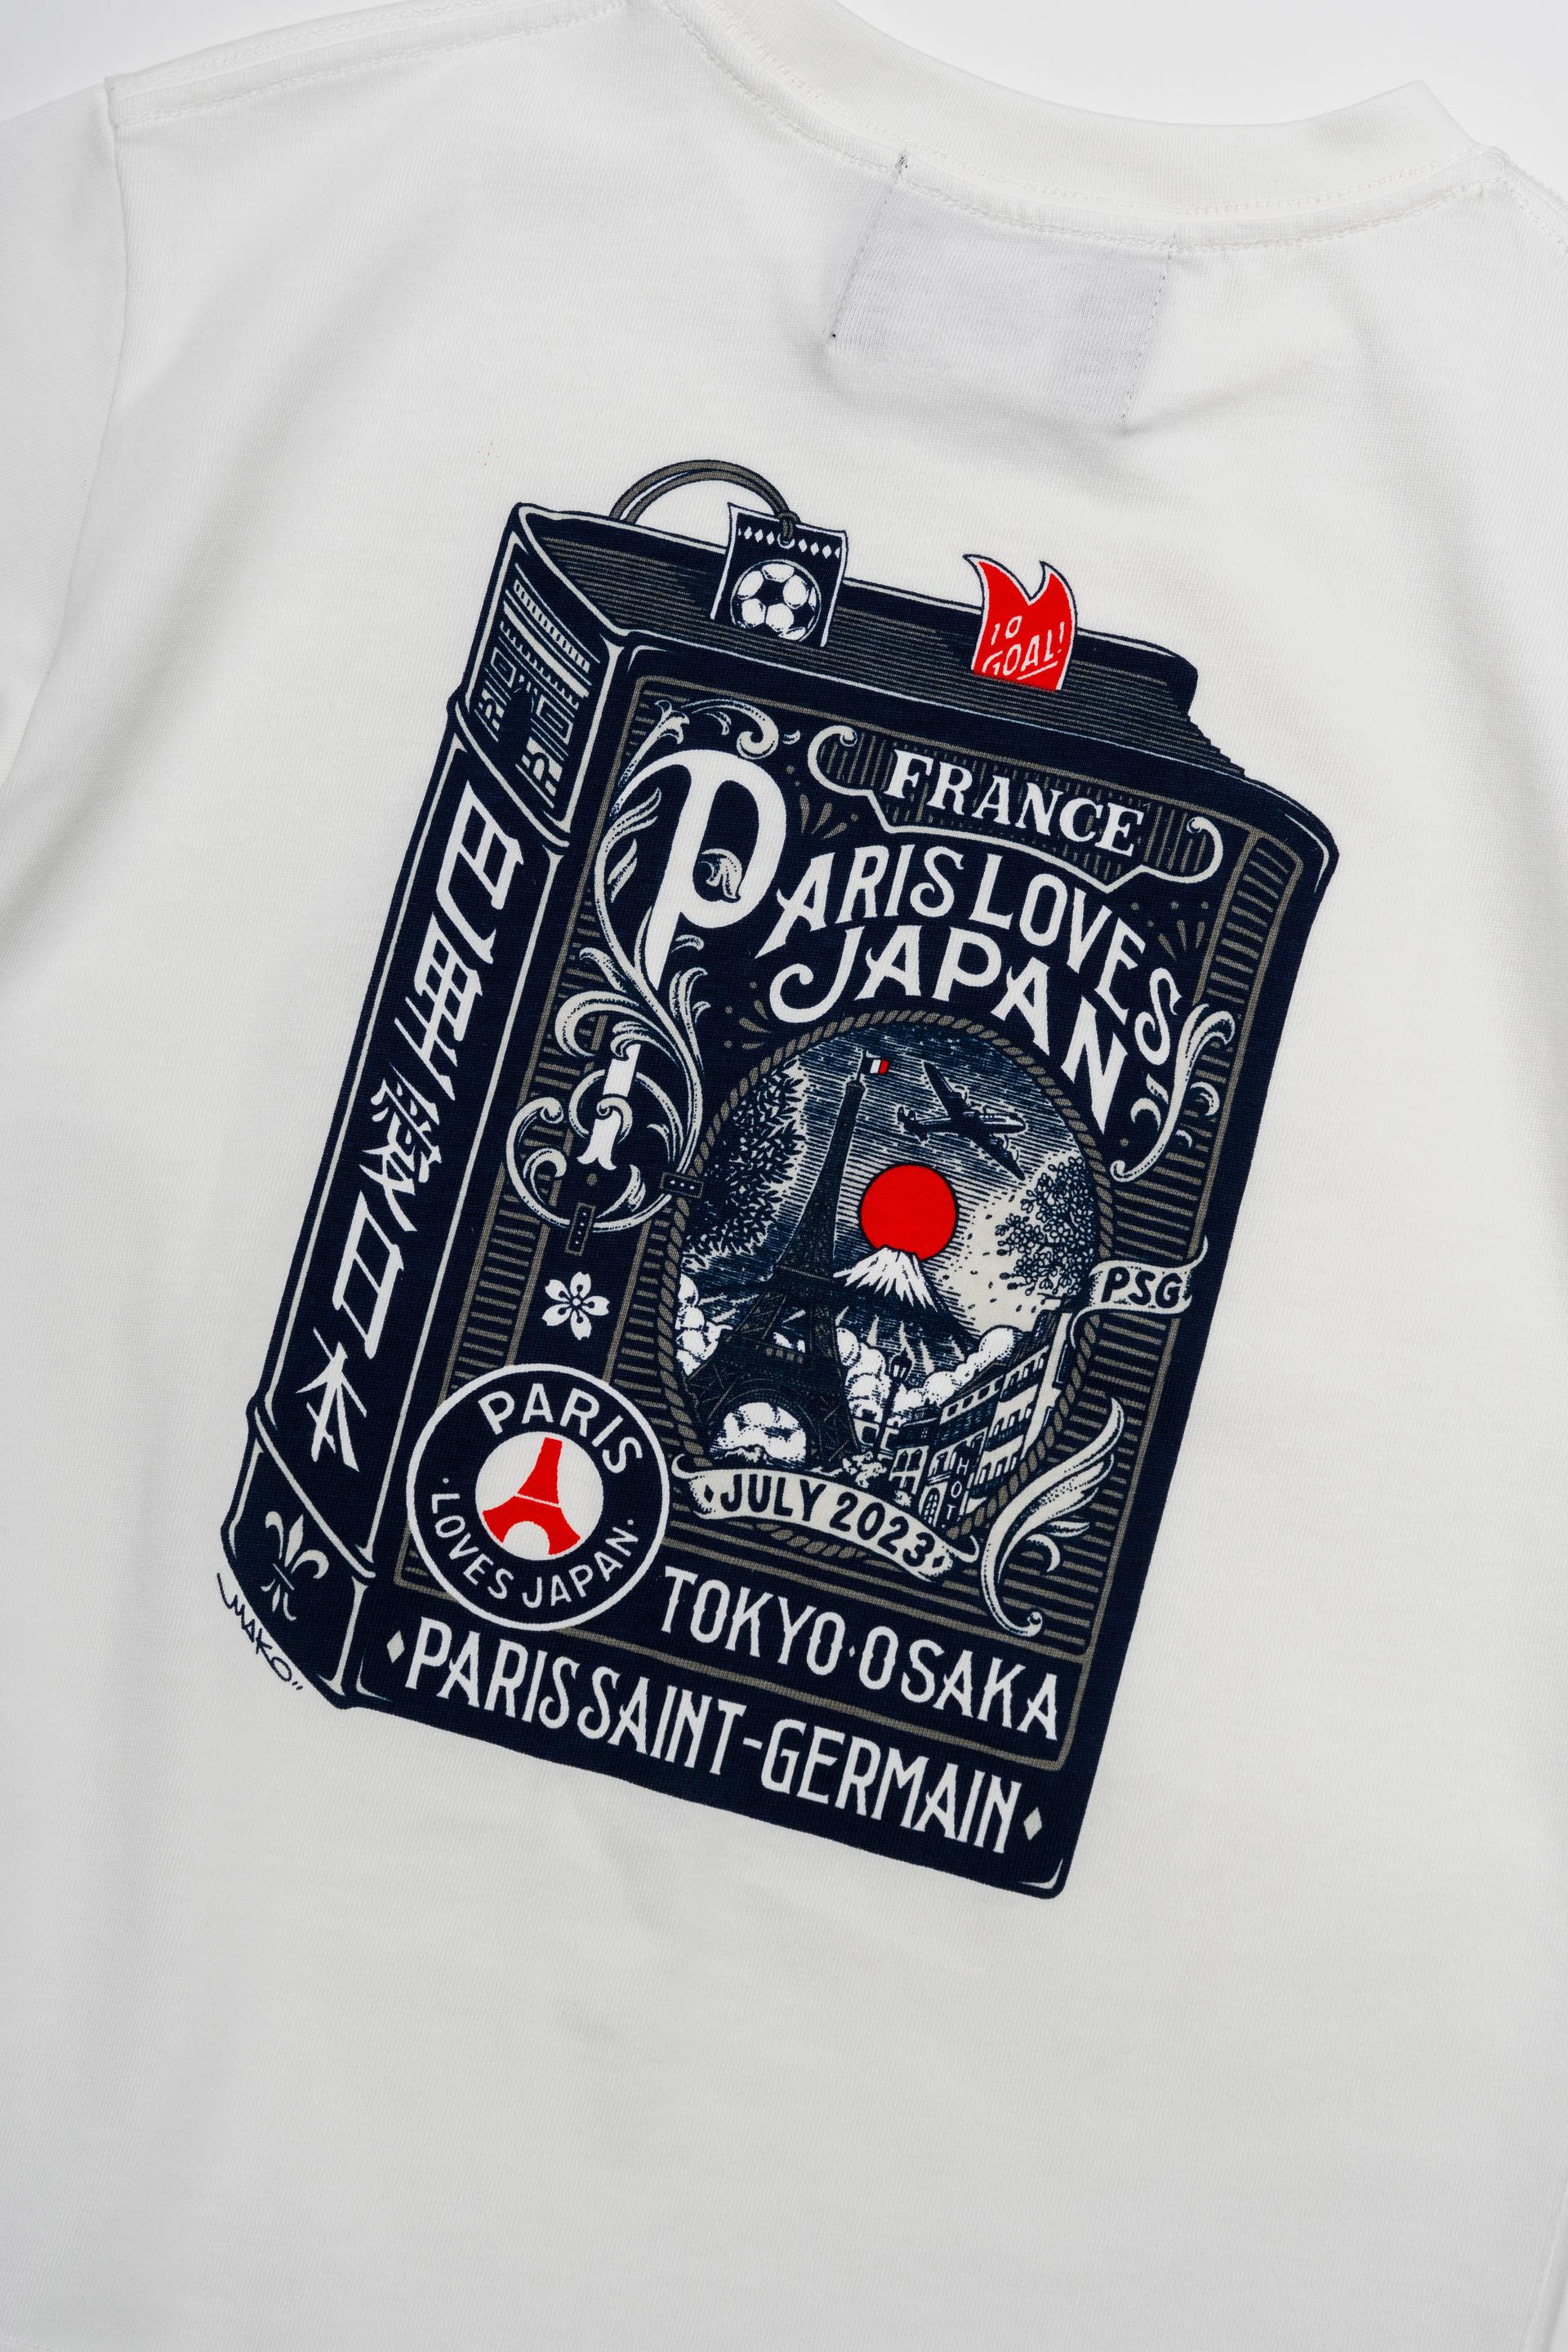 山木真 X PARIS SAINT-GERMAINのコラボTシャツのプリント